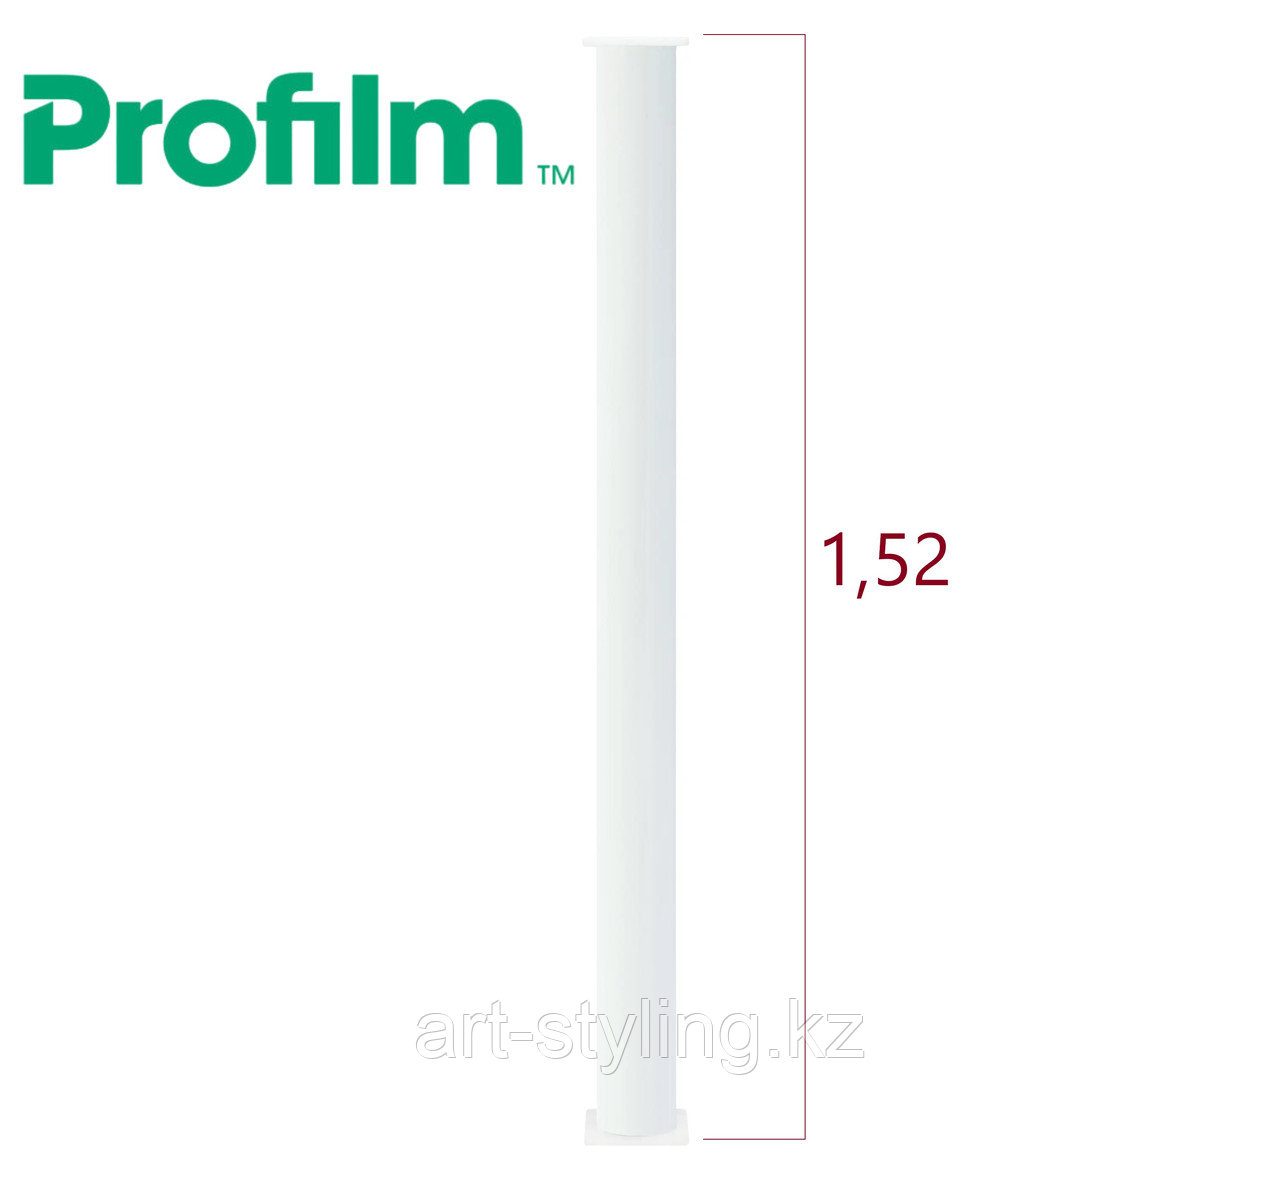 Profilm PPF Ultra reGen (R8) антигравийная пленка 1,52 x 15